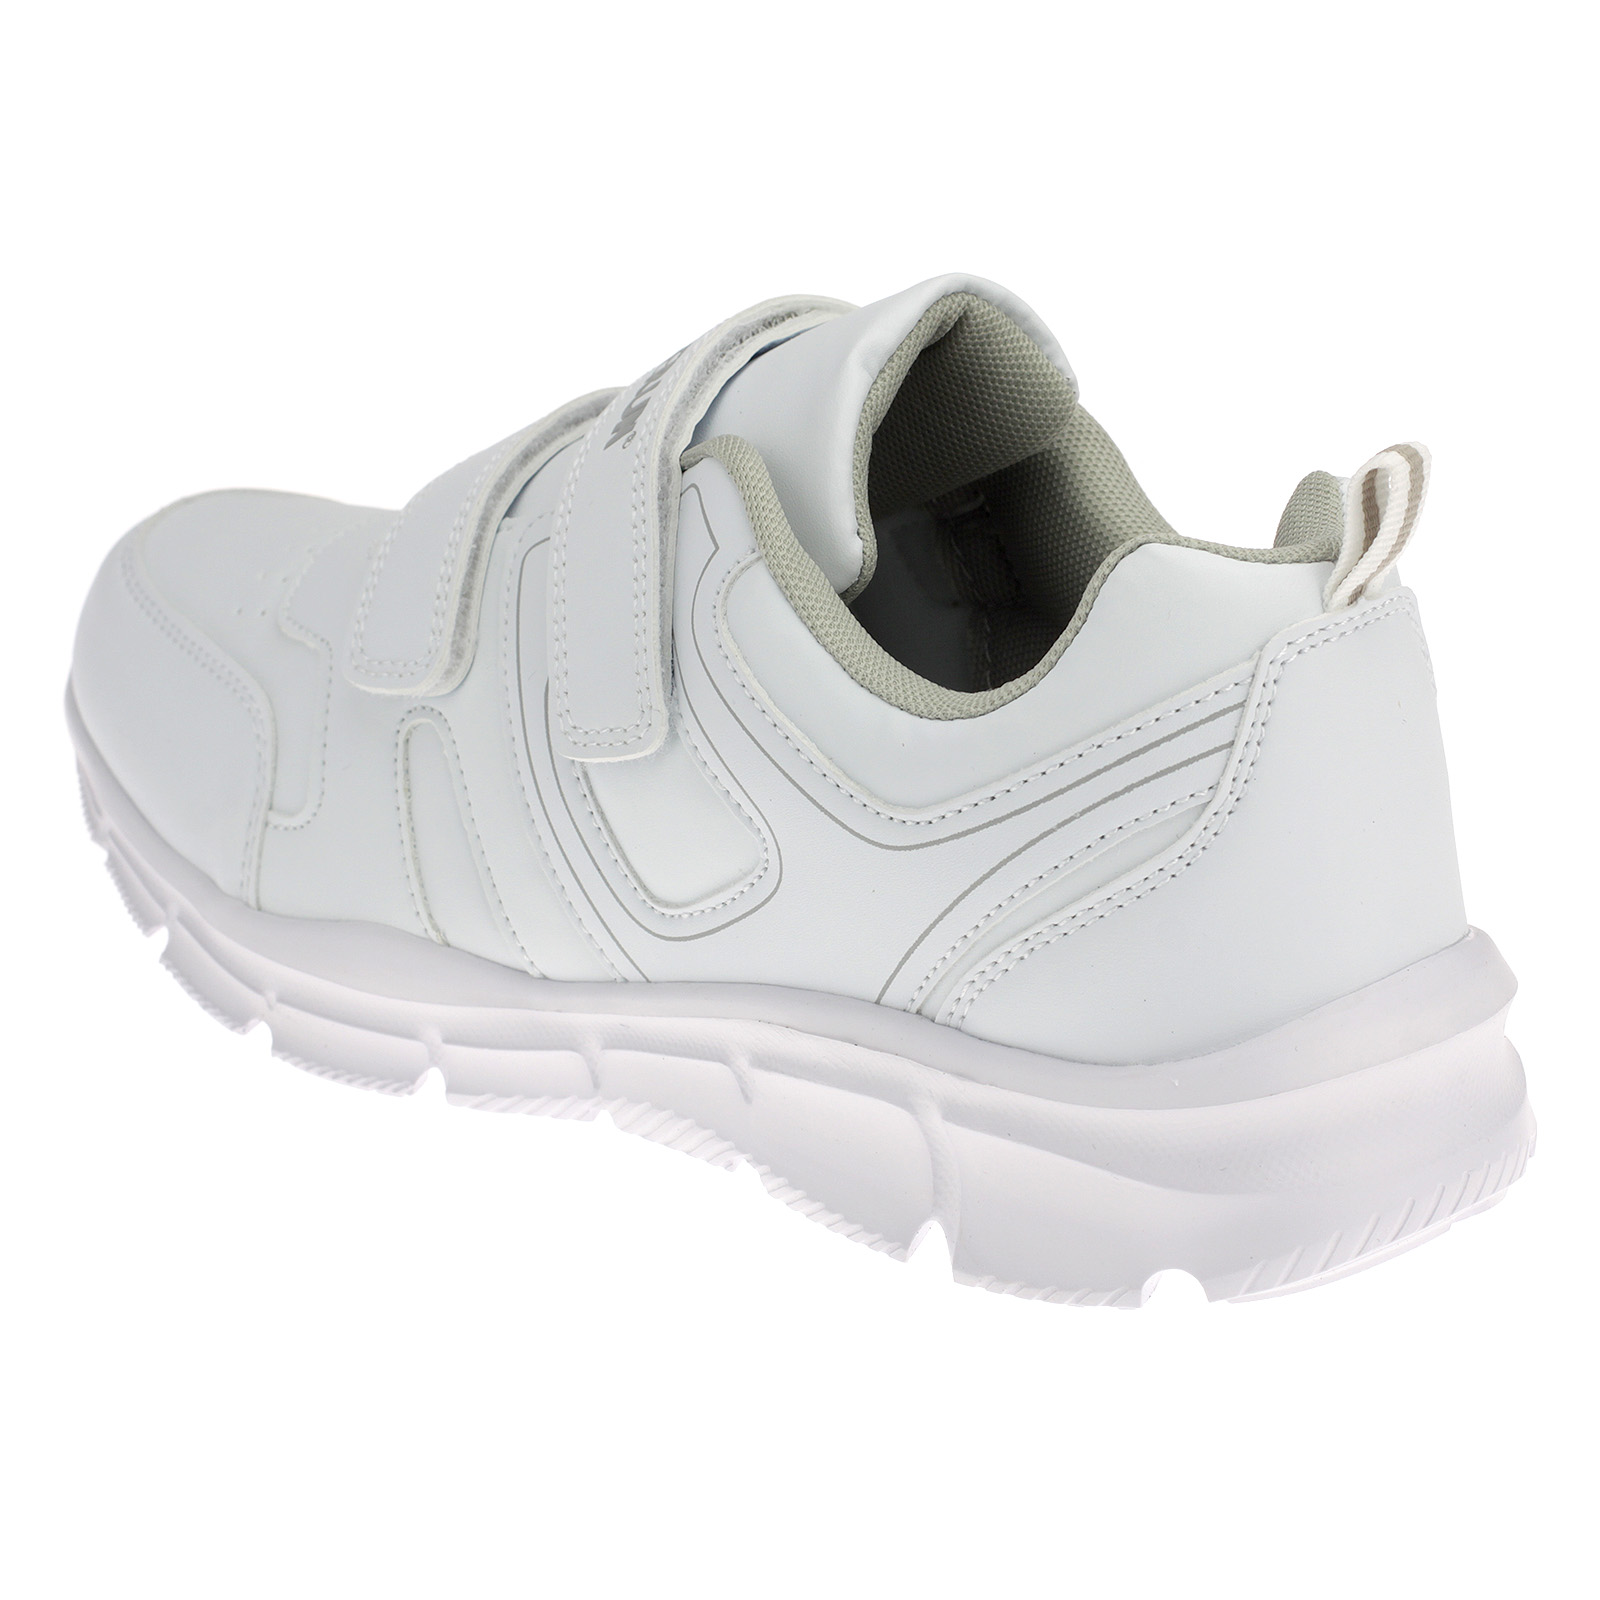 Sportschuhe mit Klettverschluss Sneaker Weiß 5786